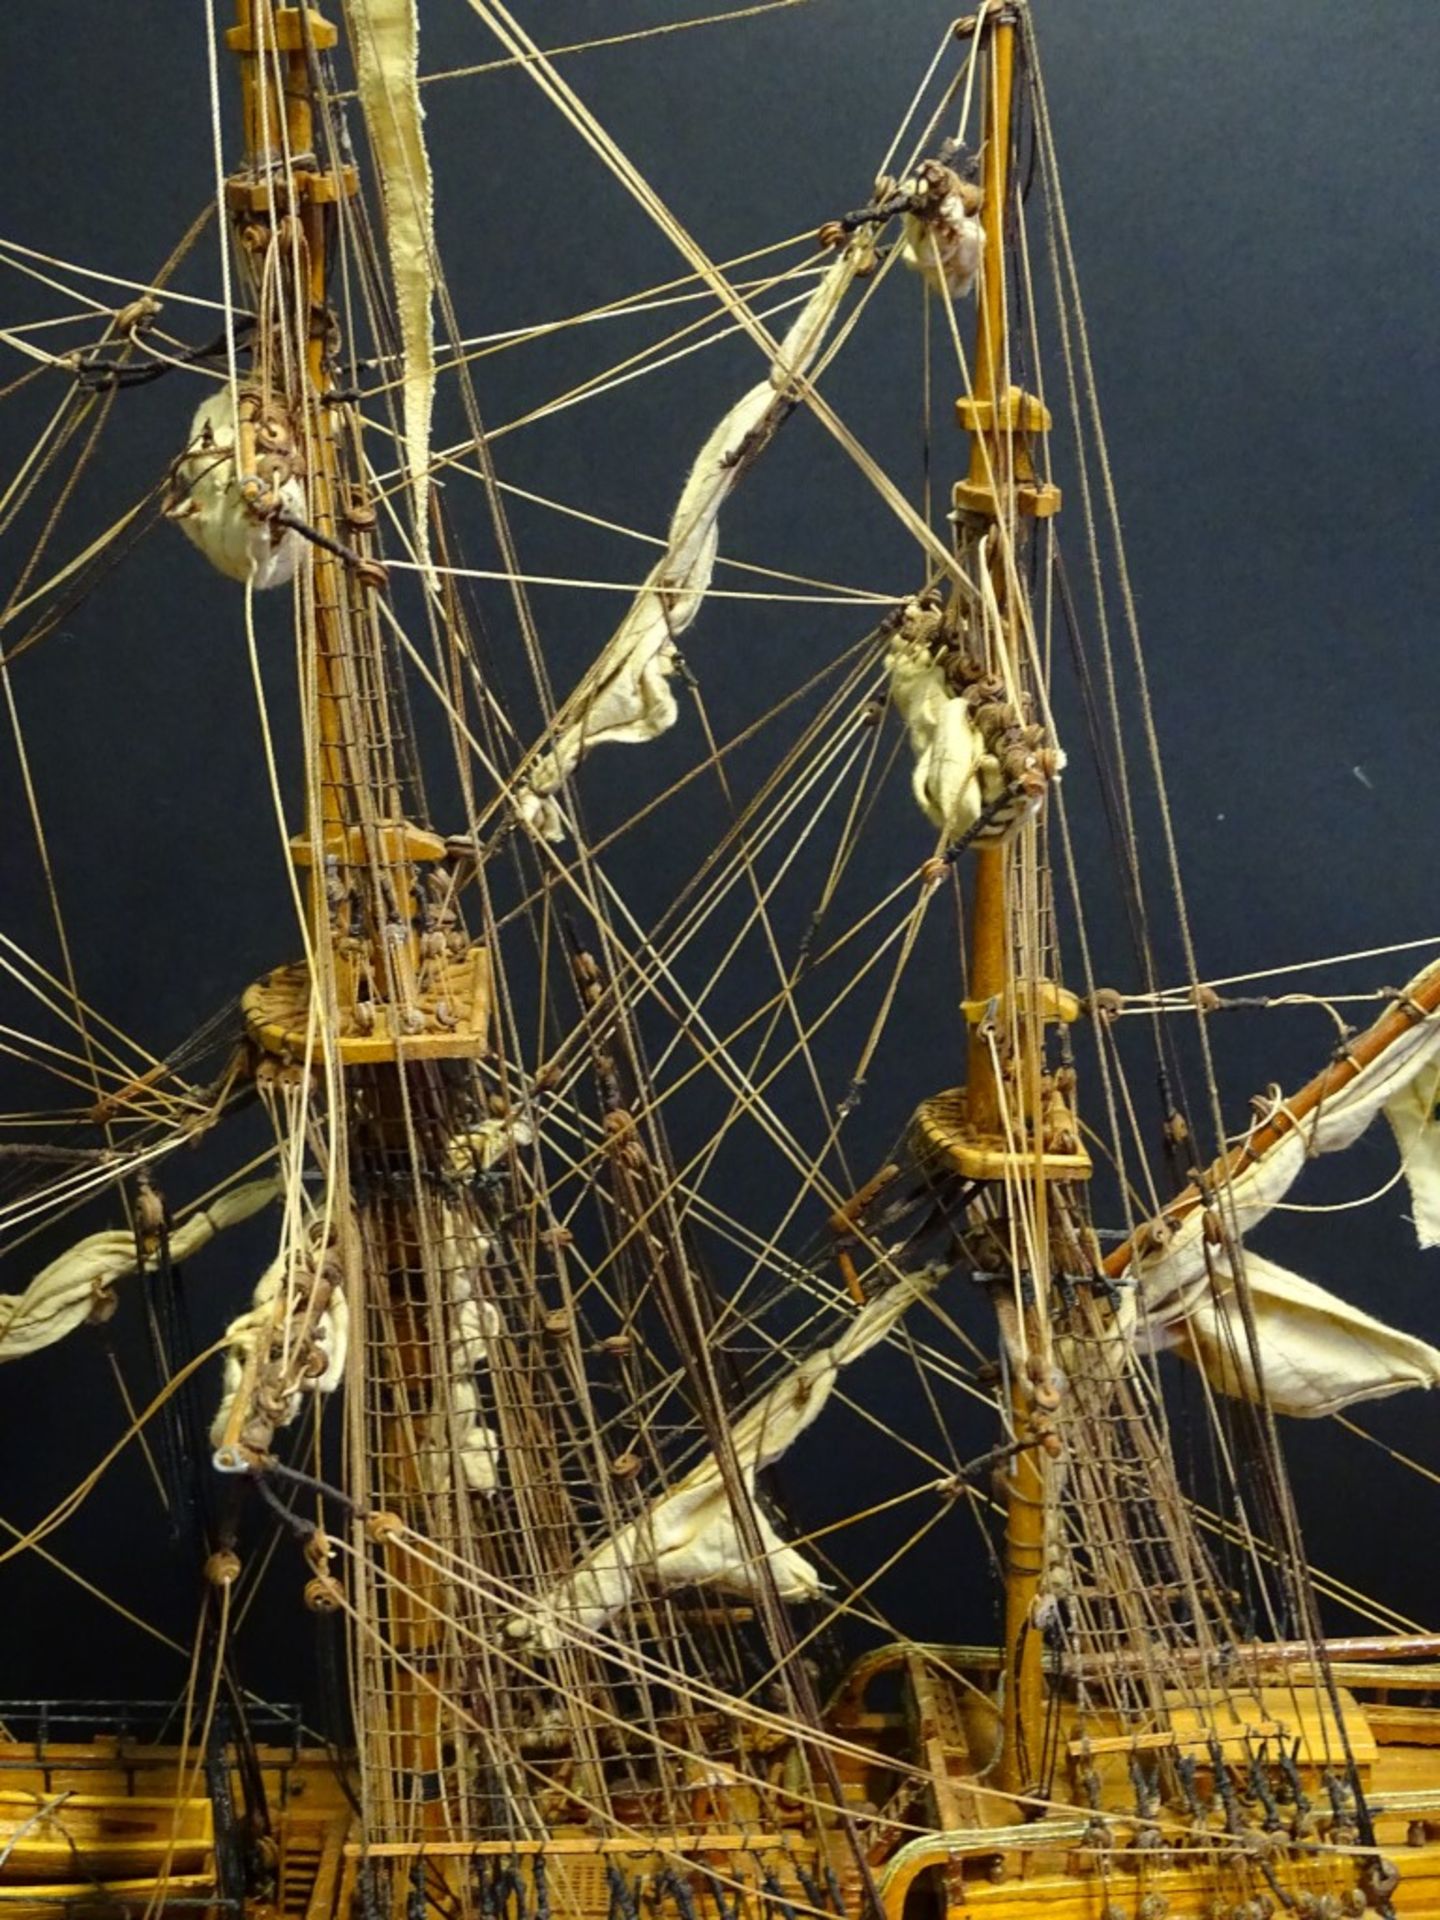 grosses Segelschiffmodell "Le superbe" in Glaskasten, feine Handarbeit, Kasten H-70,5 cm, 95x35,5 - Bild 7 aus 10